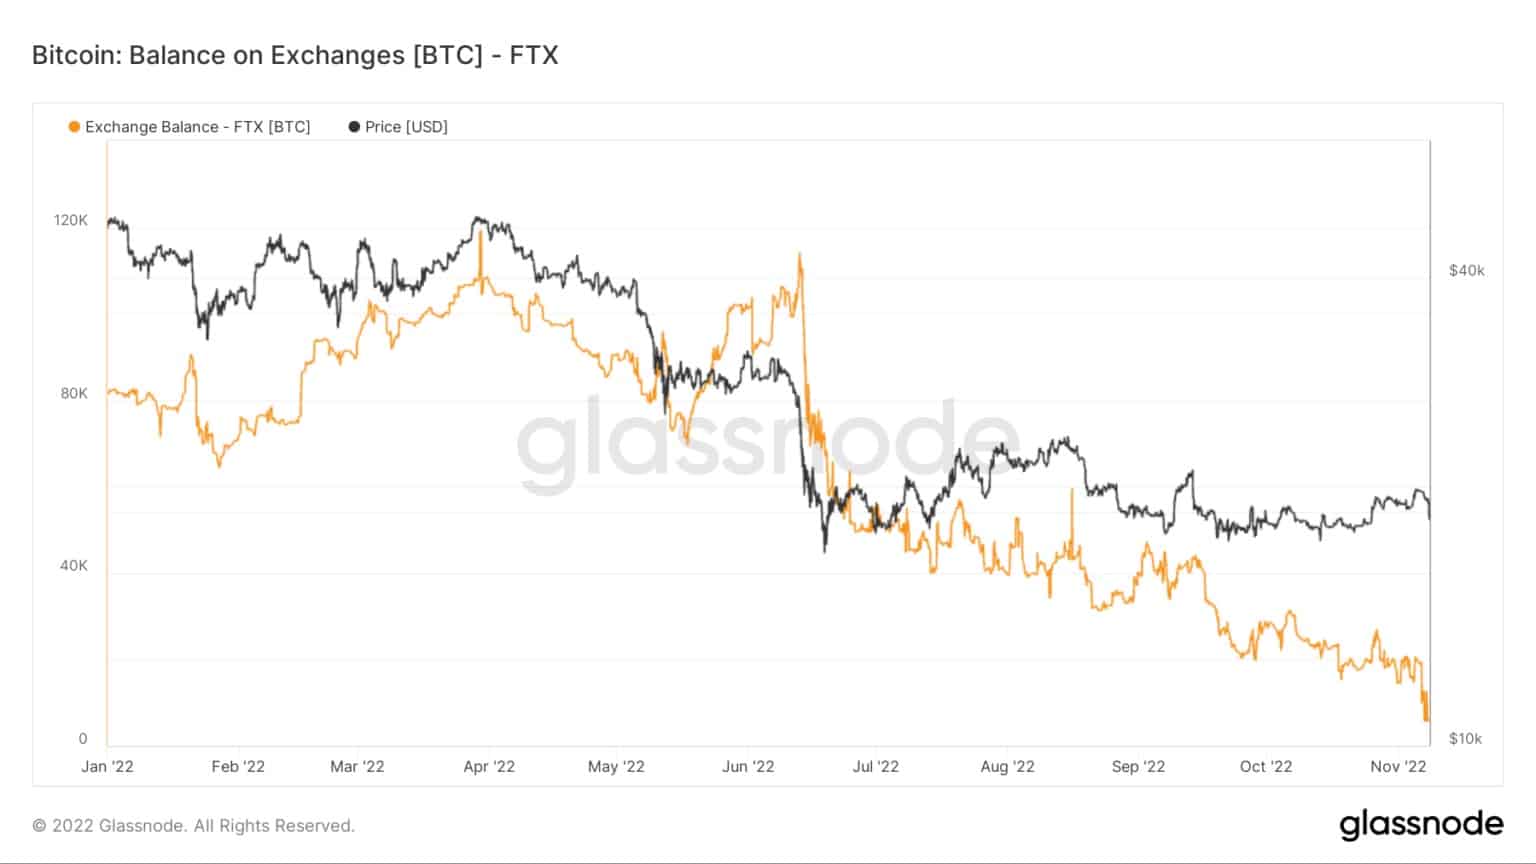 FTX Bitcoin balance from January to November 2022